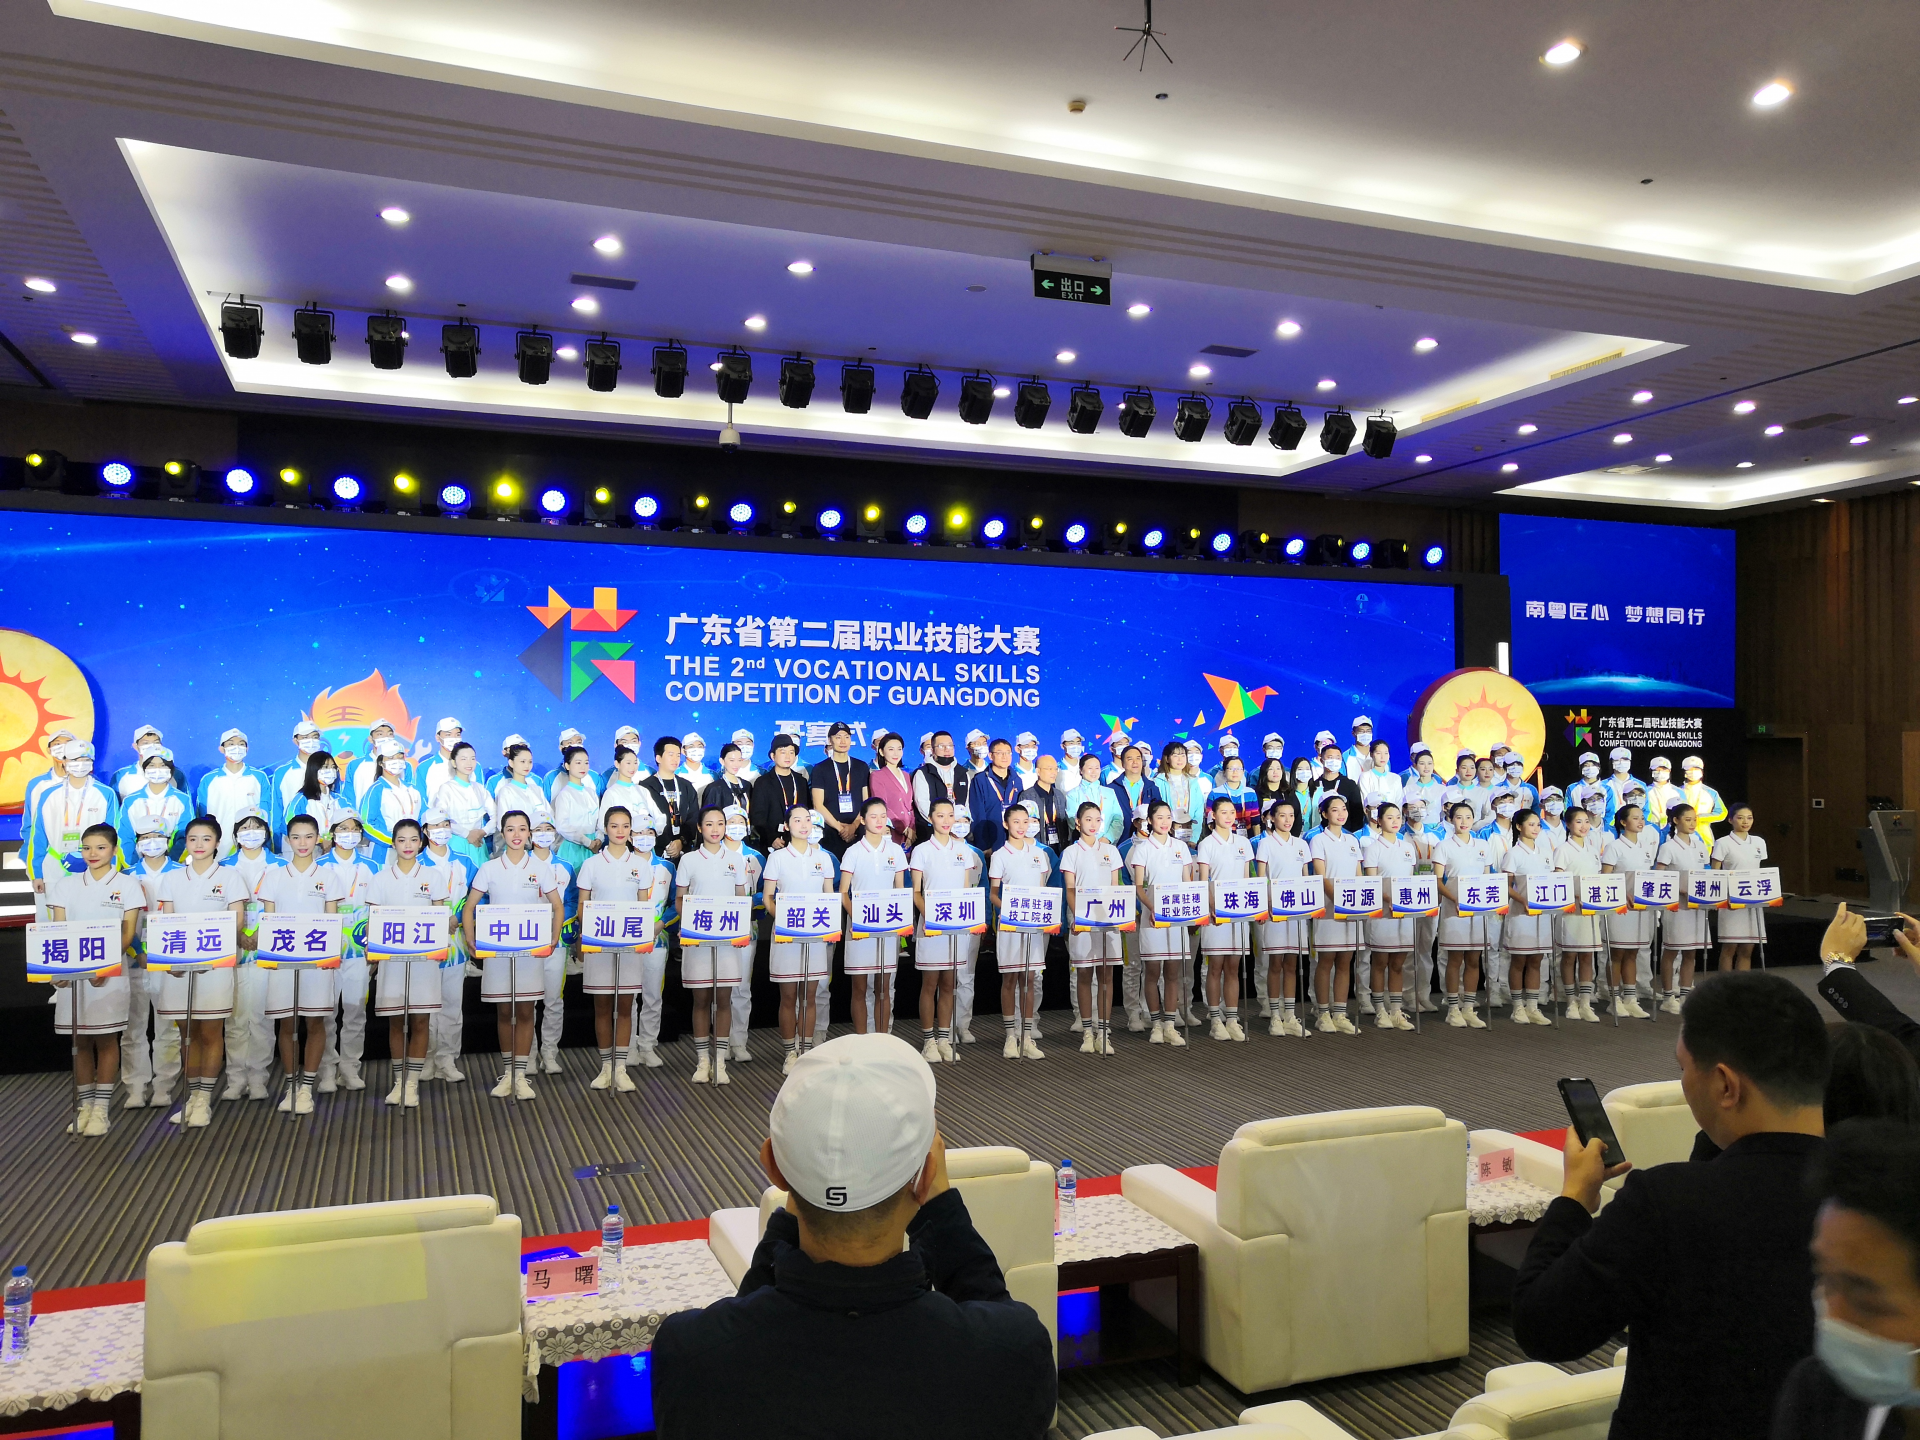 广东省第二届职业技能大赛12月3日开赛，奖牌设计元素突出广东特色